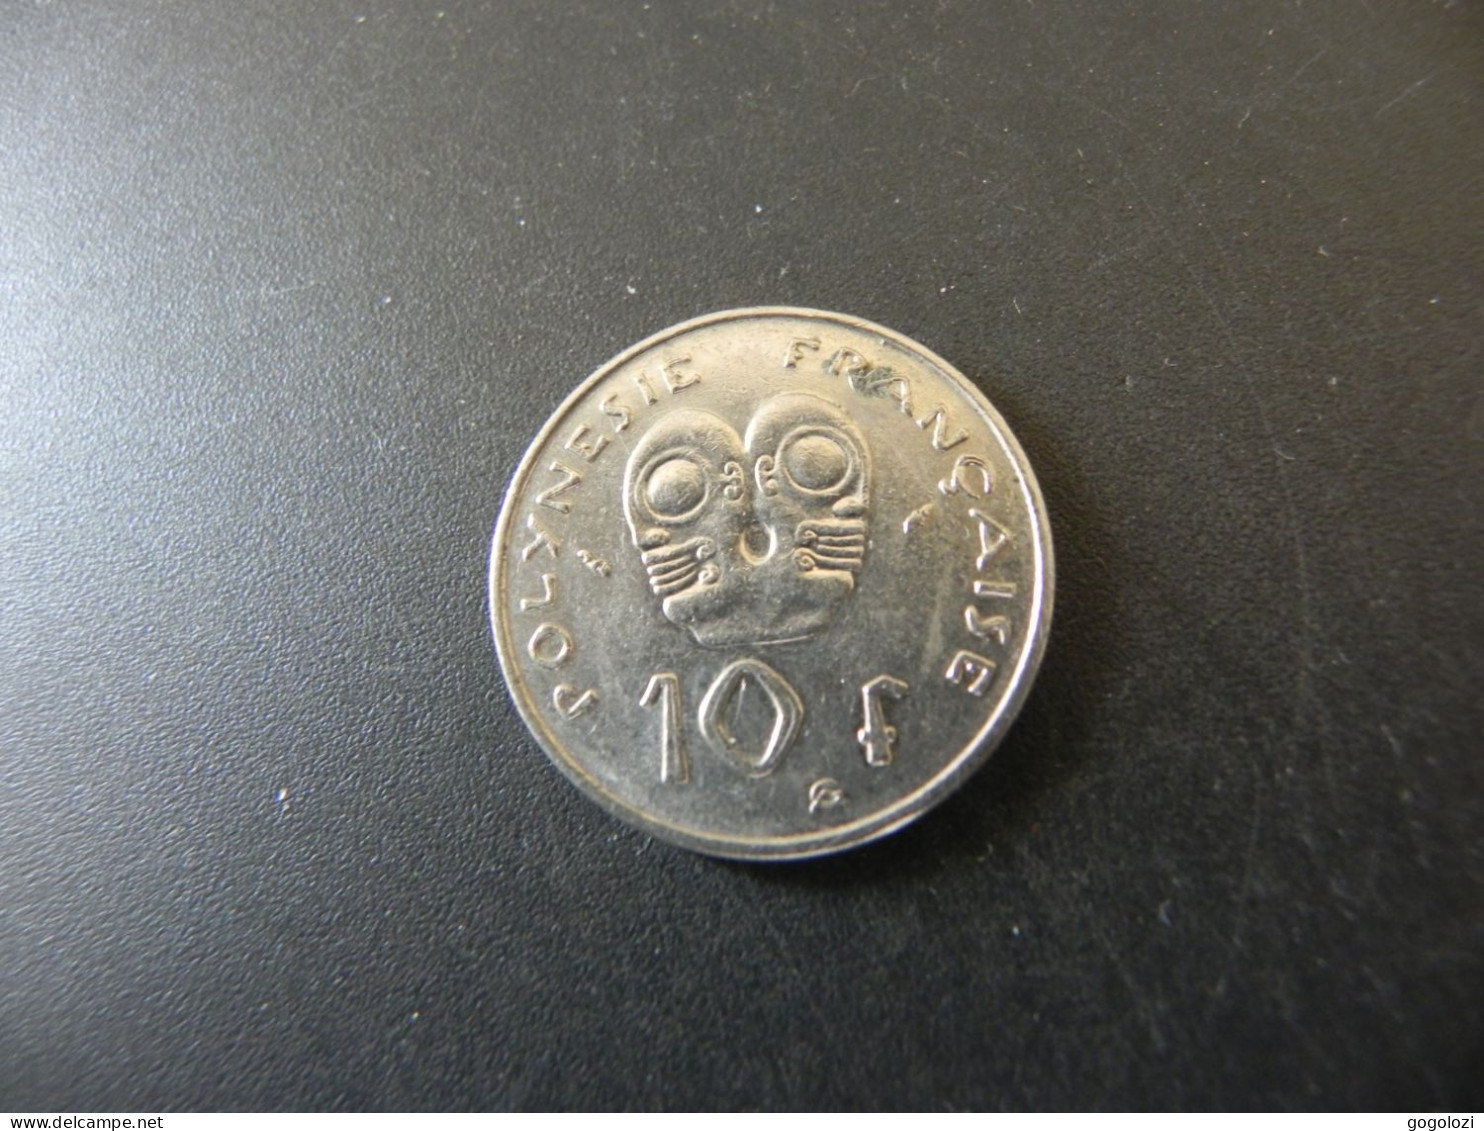 Polynesie Française 10 Francs 1984 - Polynésie Française